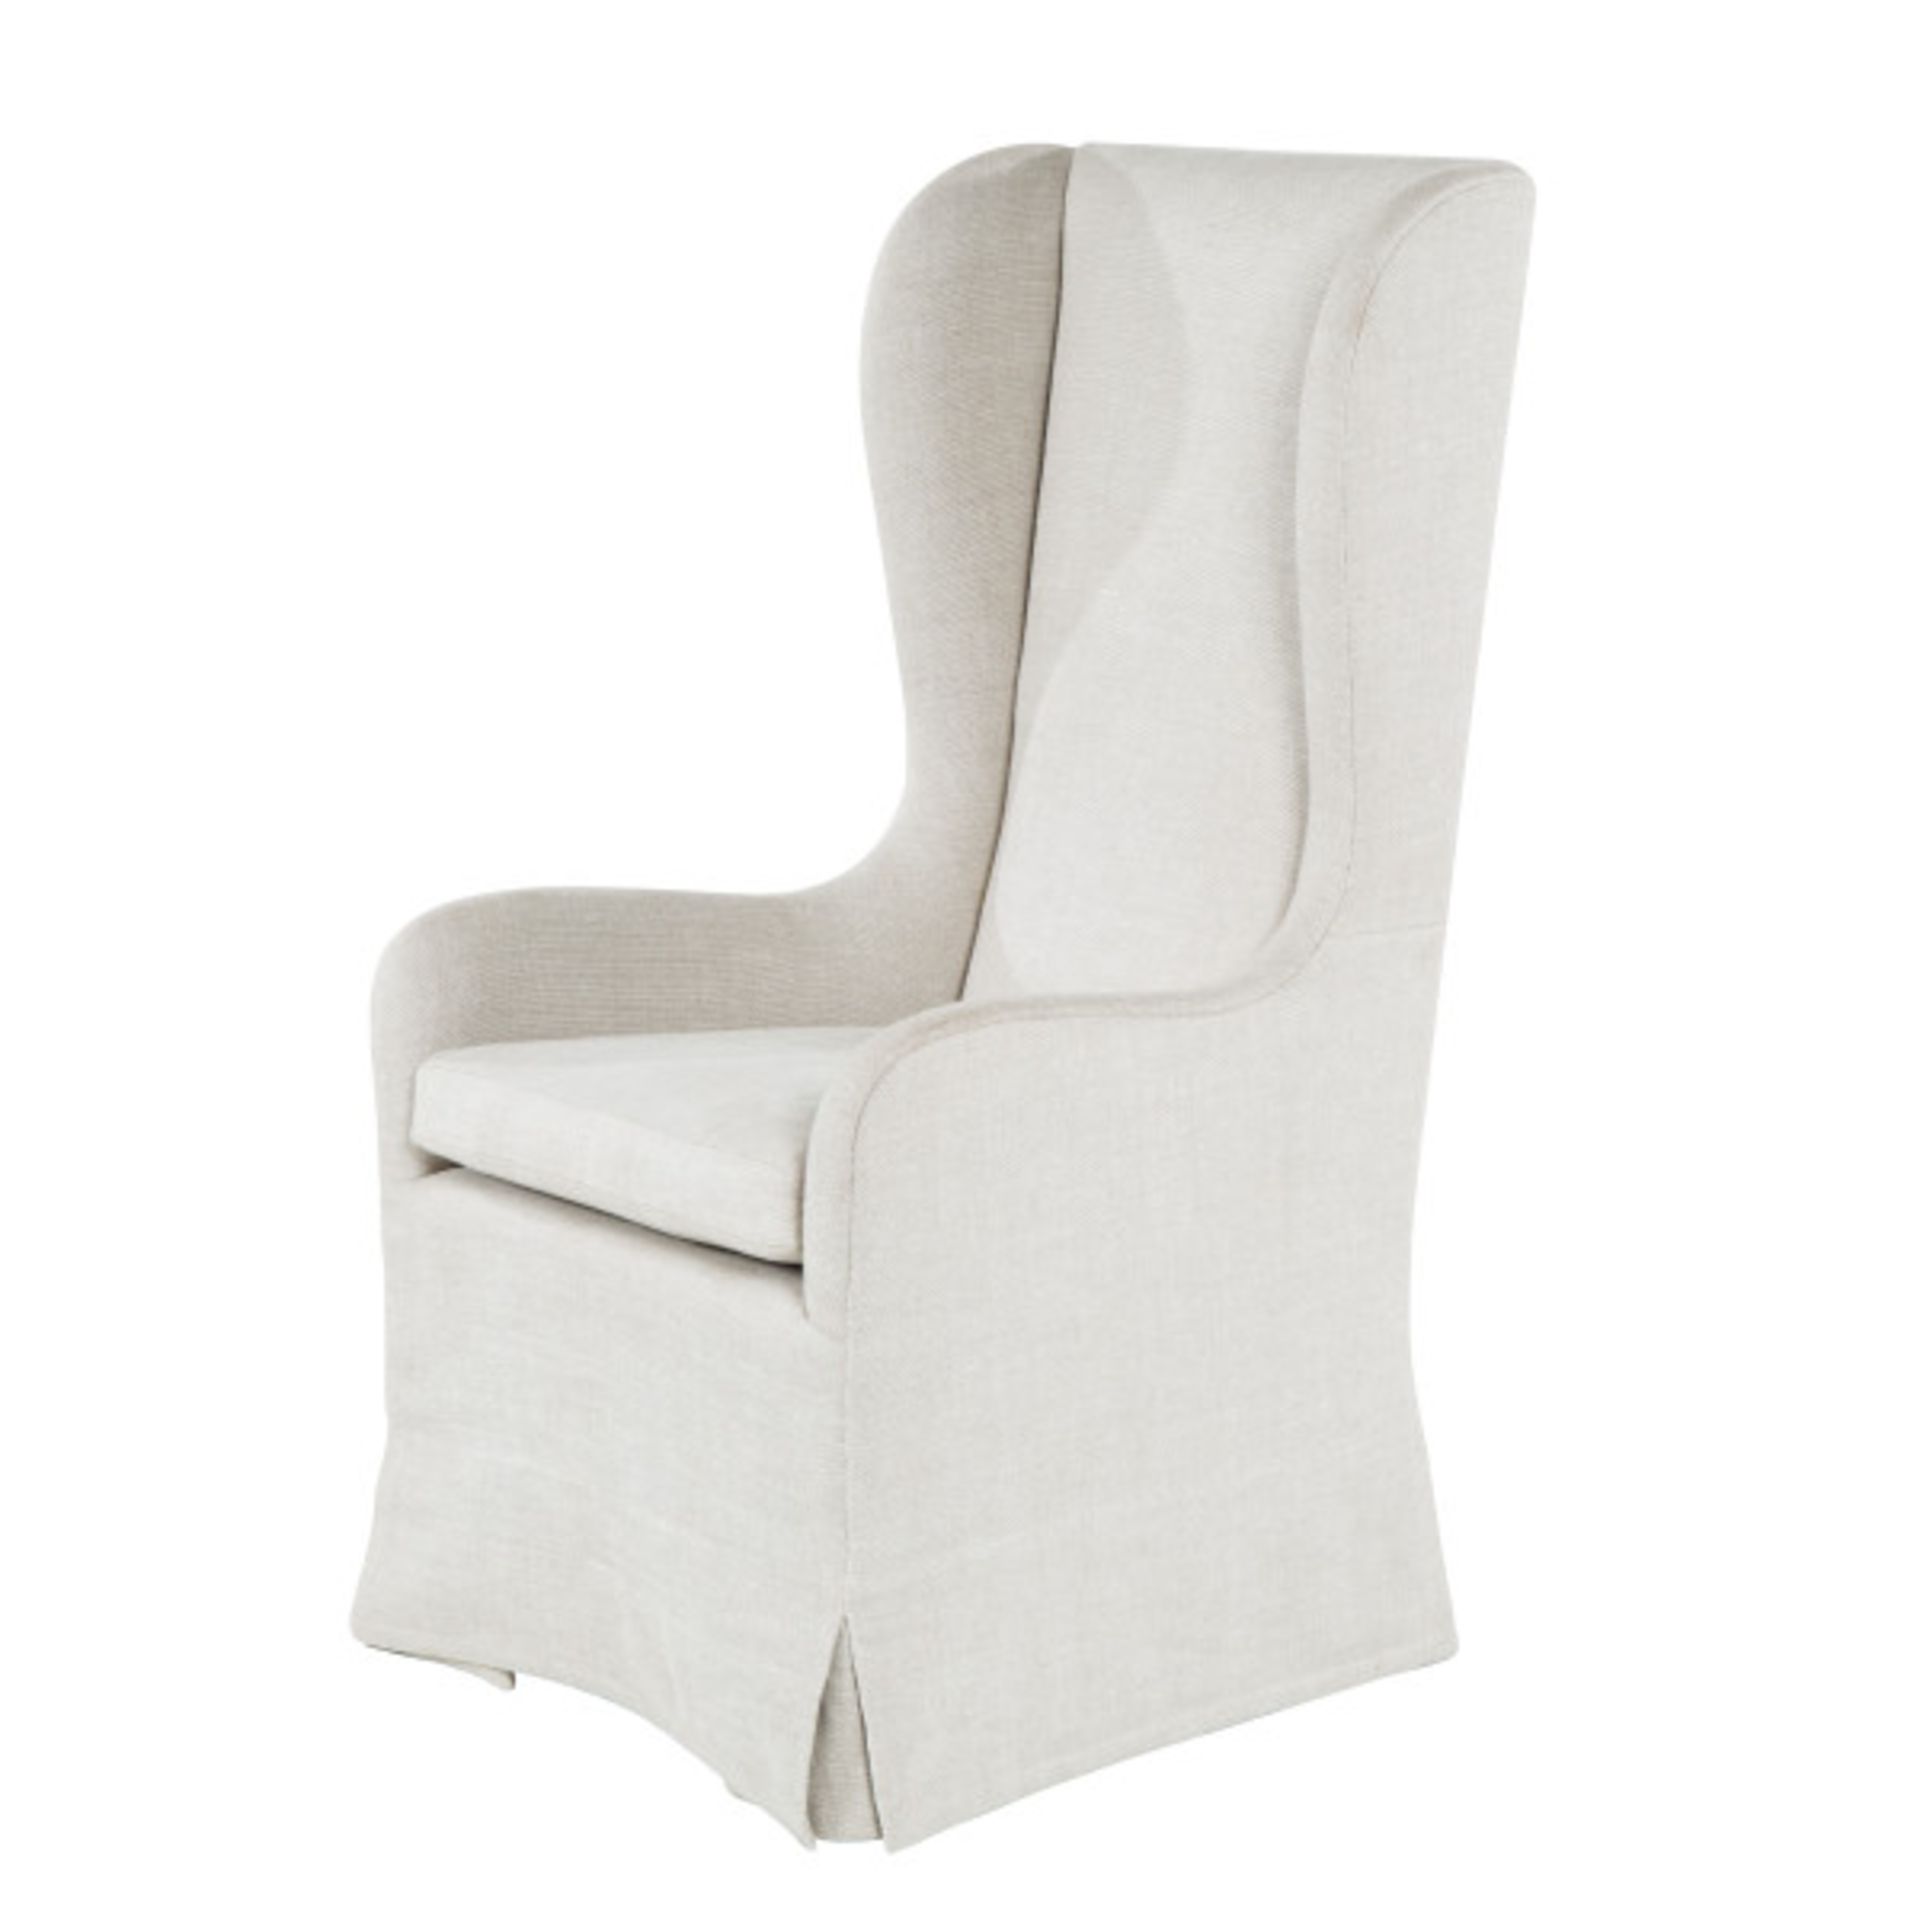 Maison 55 Brynn Arm Chair Neo Classic High Back Accent Chair carton dimensions 81 xx 90 x 136cm MSRP